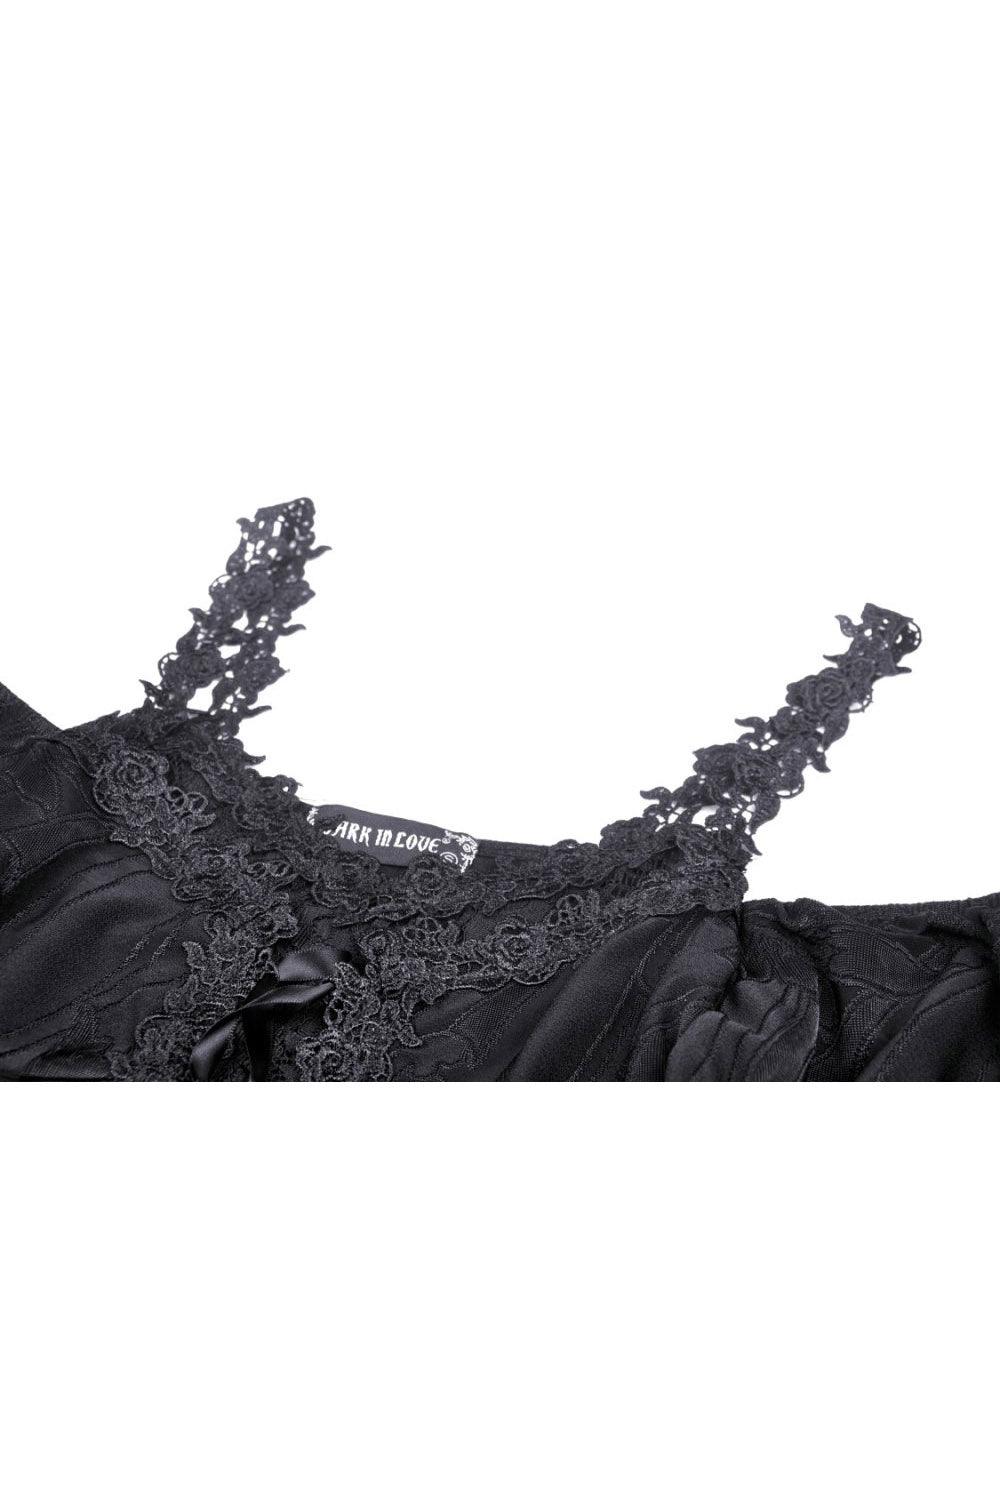 Dark In Love Castel Creature Victorian Goth Dress - VampireFreaks